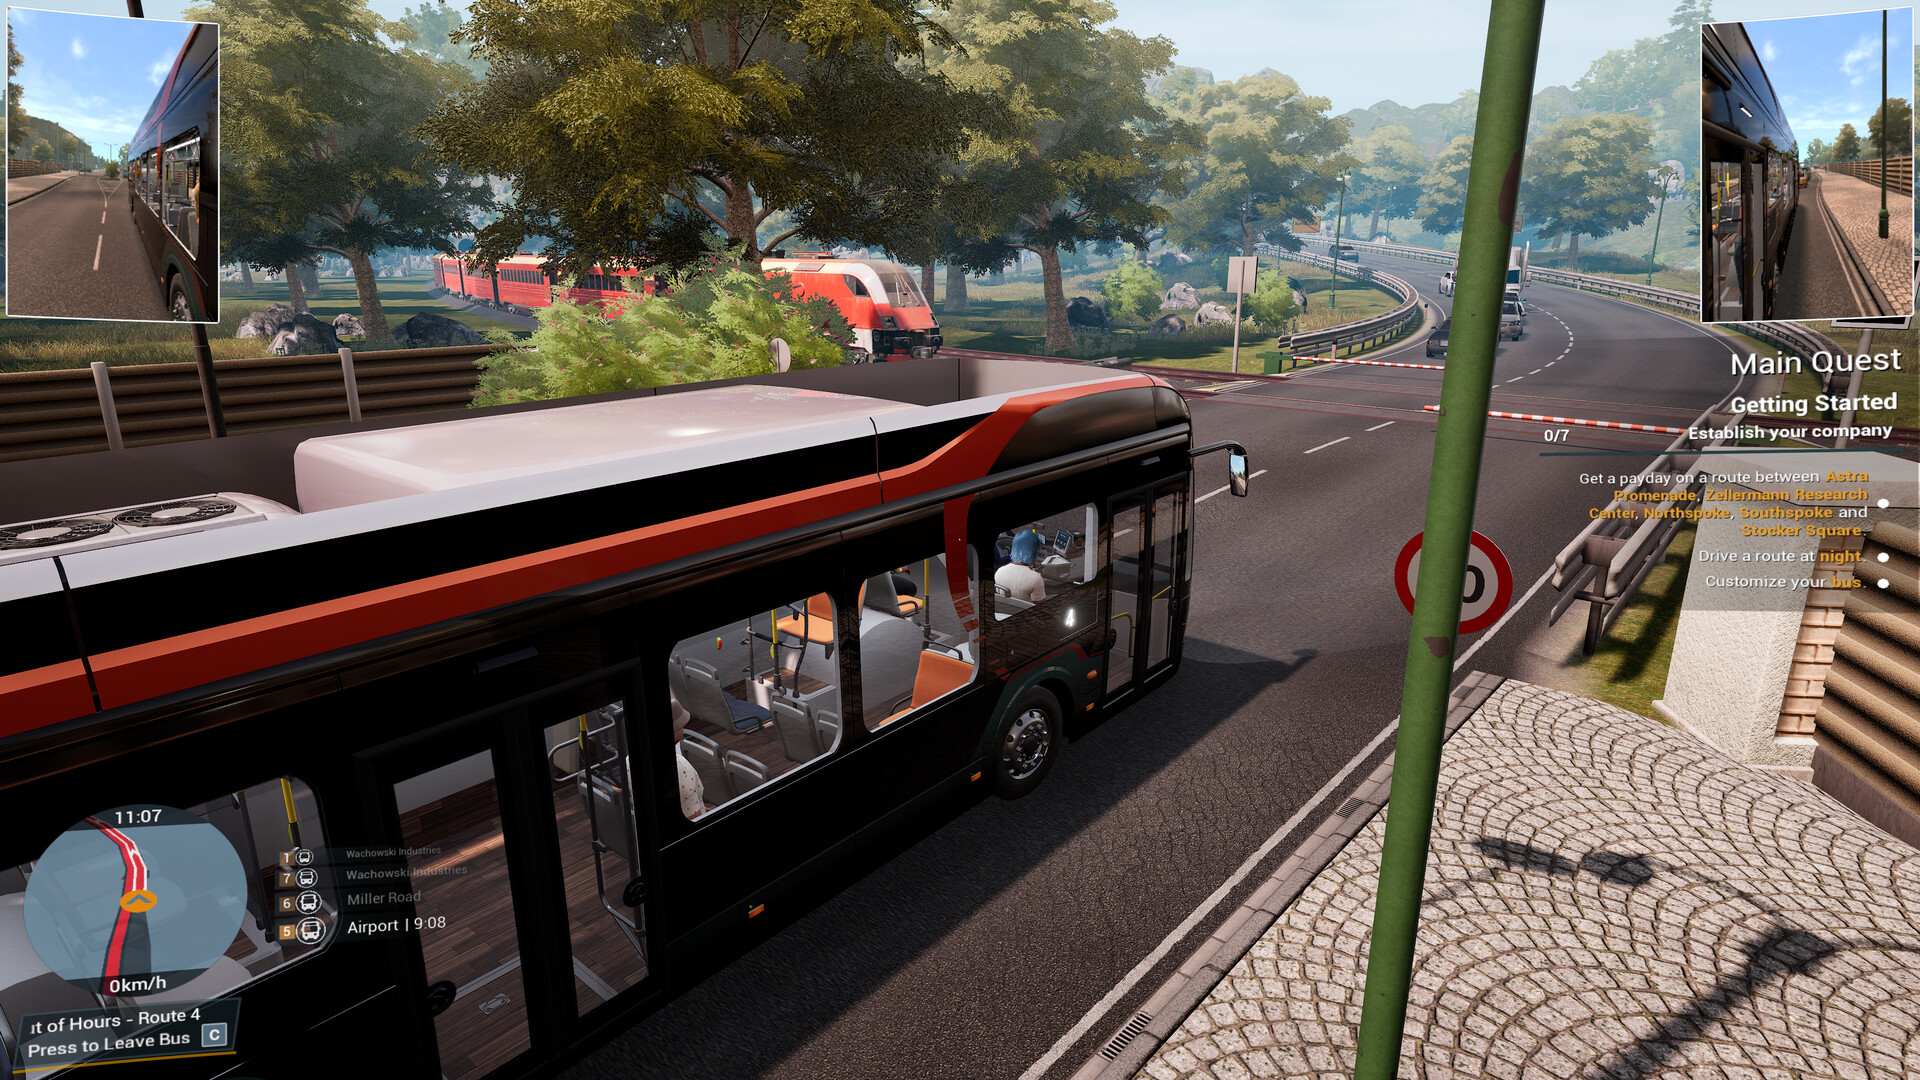 Bus Simulator 18 no Steam